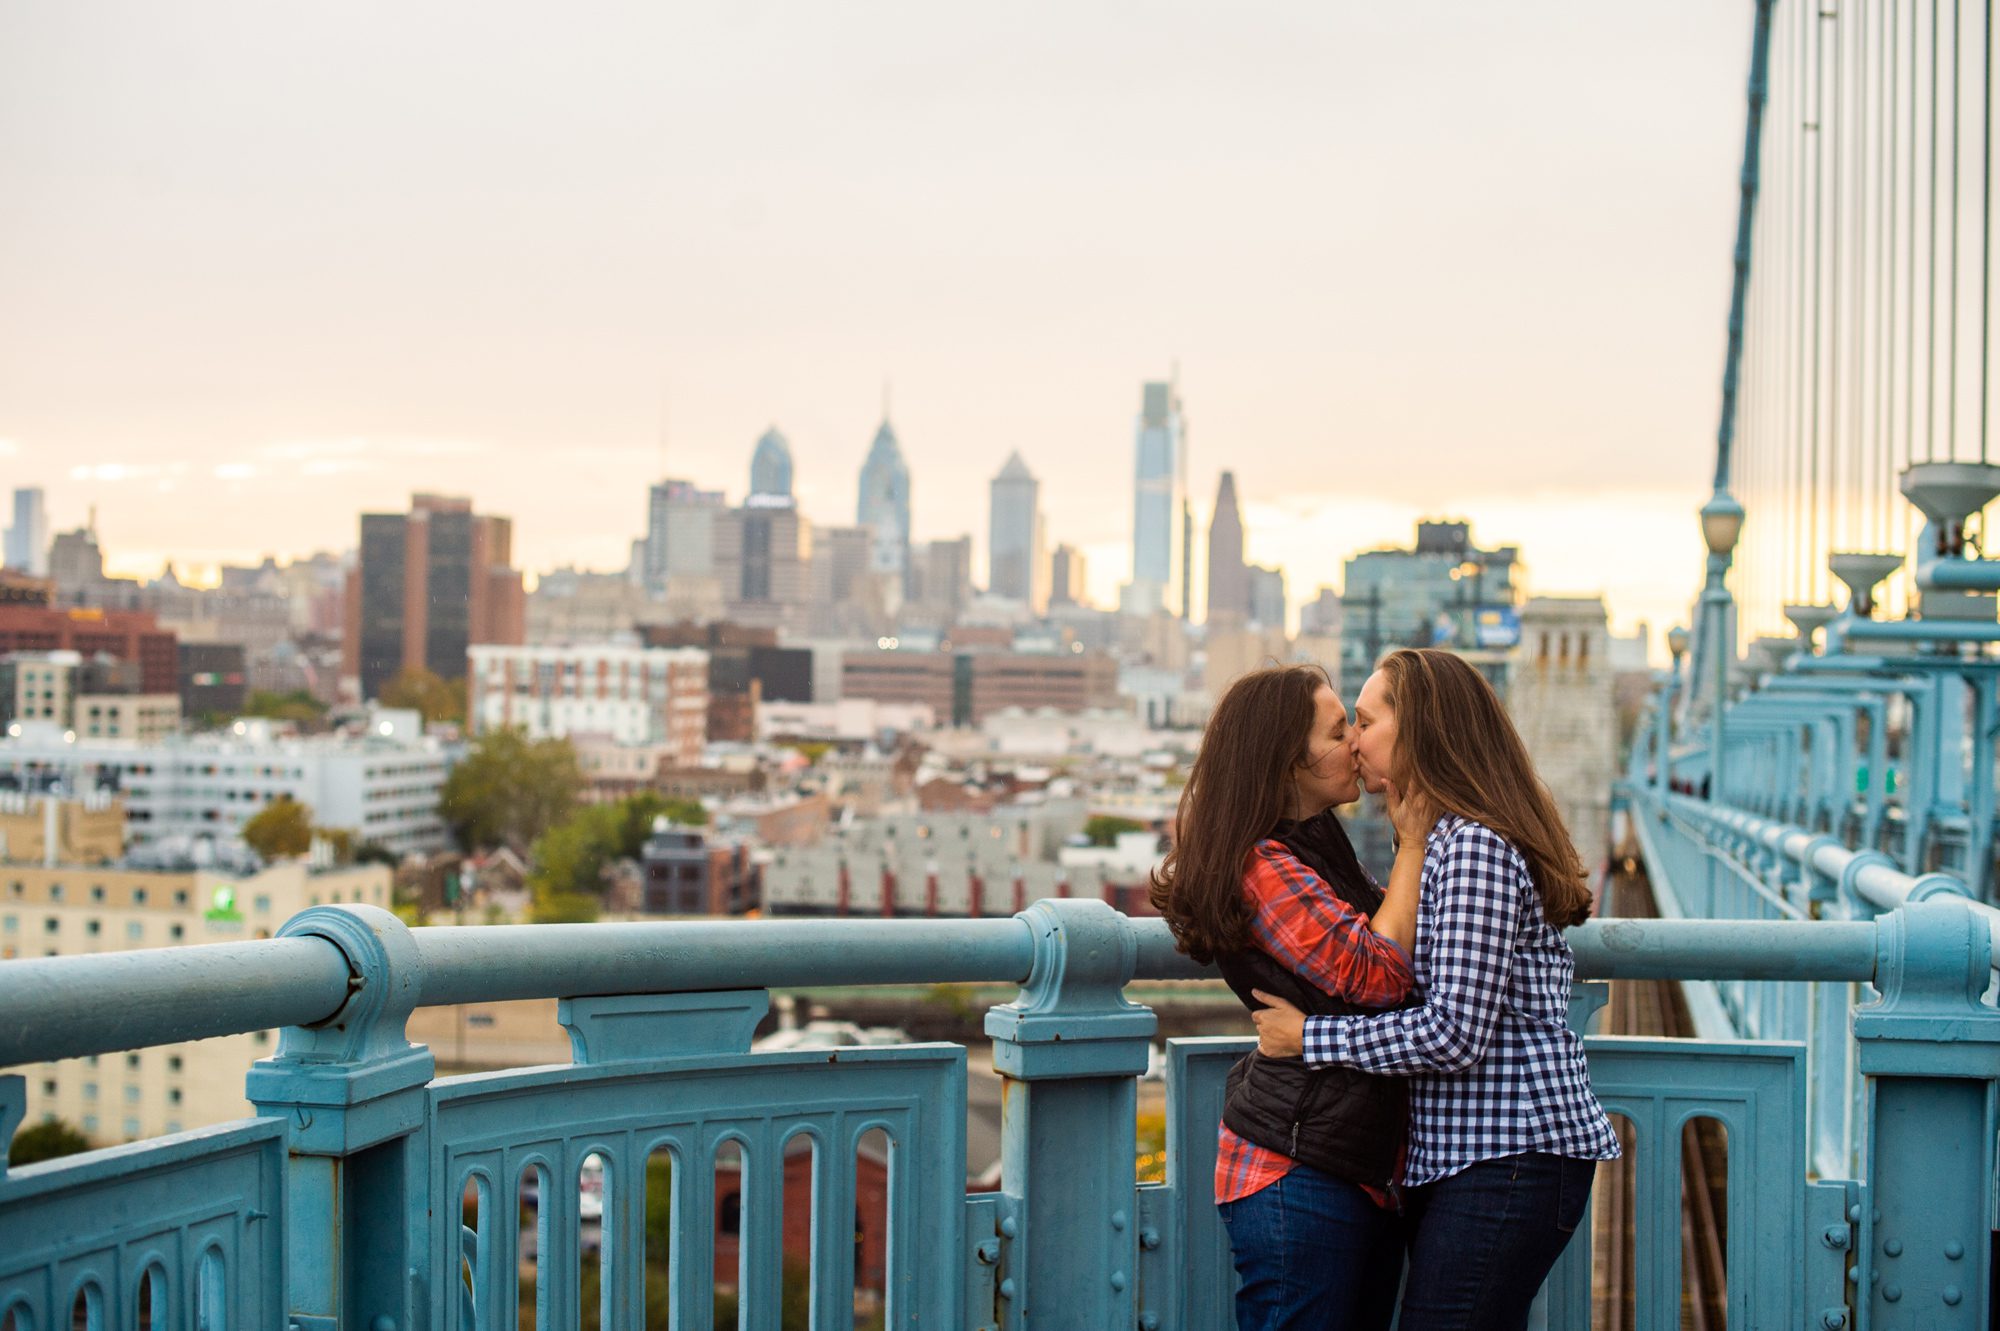 Where to Take Engagement Photos in Philadelphia